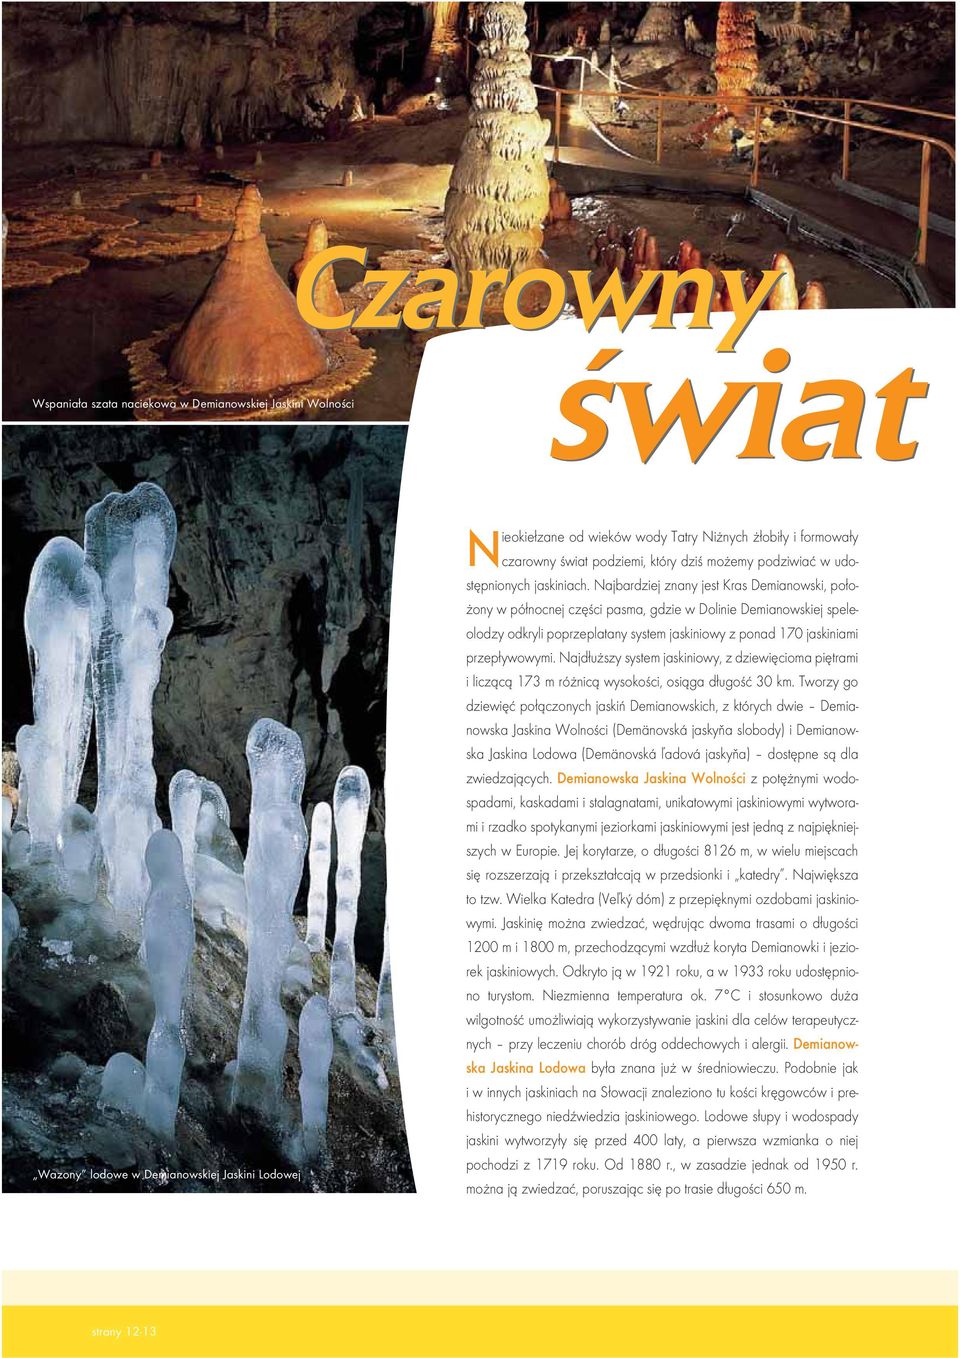 Najbardziej znany jest Kras Demianowski, położony w północnej części pasma, gdzie w Dolinie Demianowskiej speleolodzy odkryli poprzeplatany system jaskiniowy z ponad 170 jaskiniami przepływowymi.